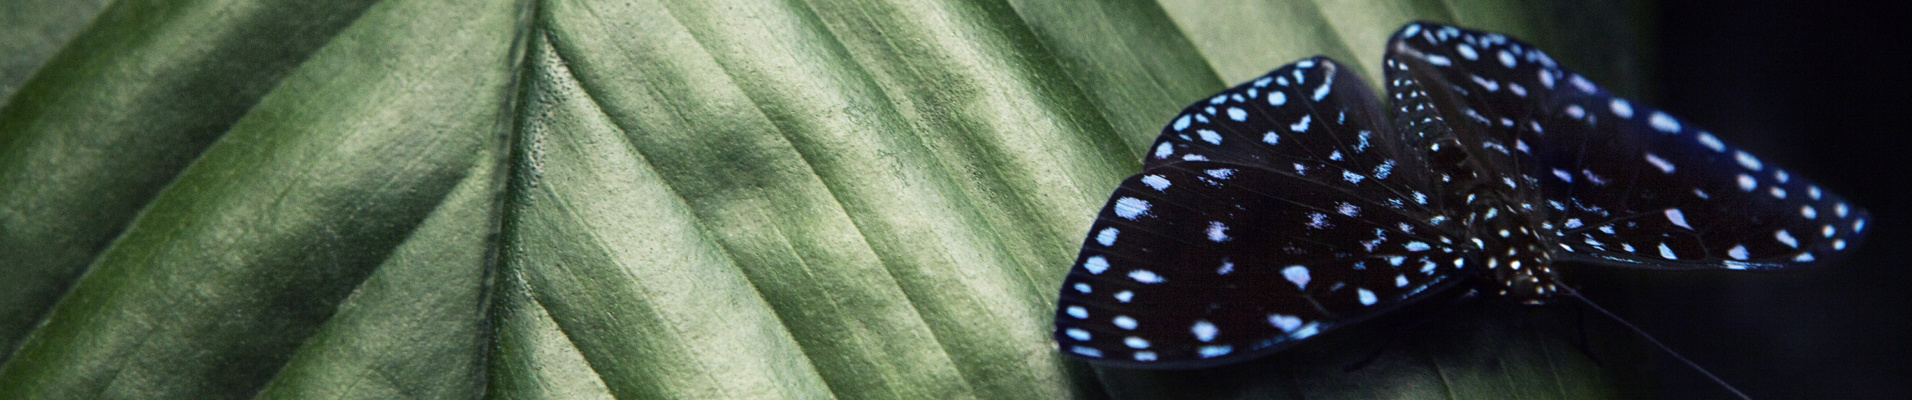 Papillon sur une feuille